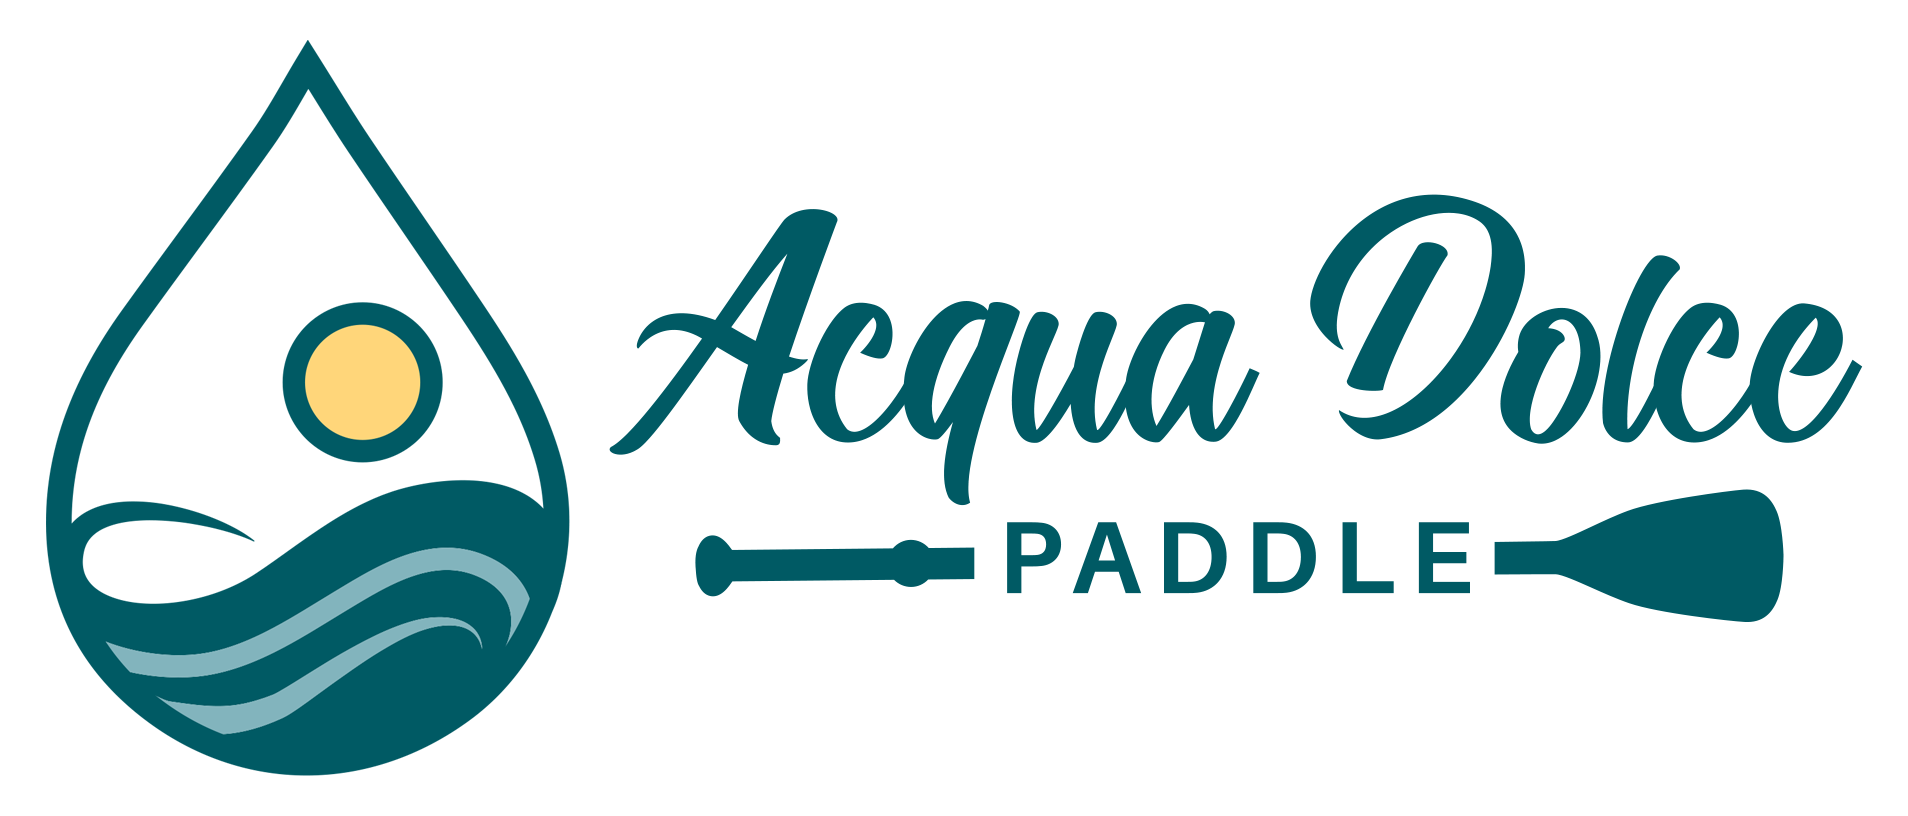 Acqua Dolce Paddle logo